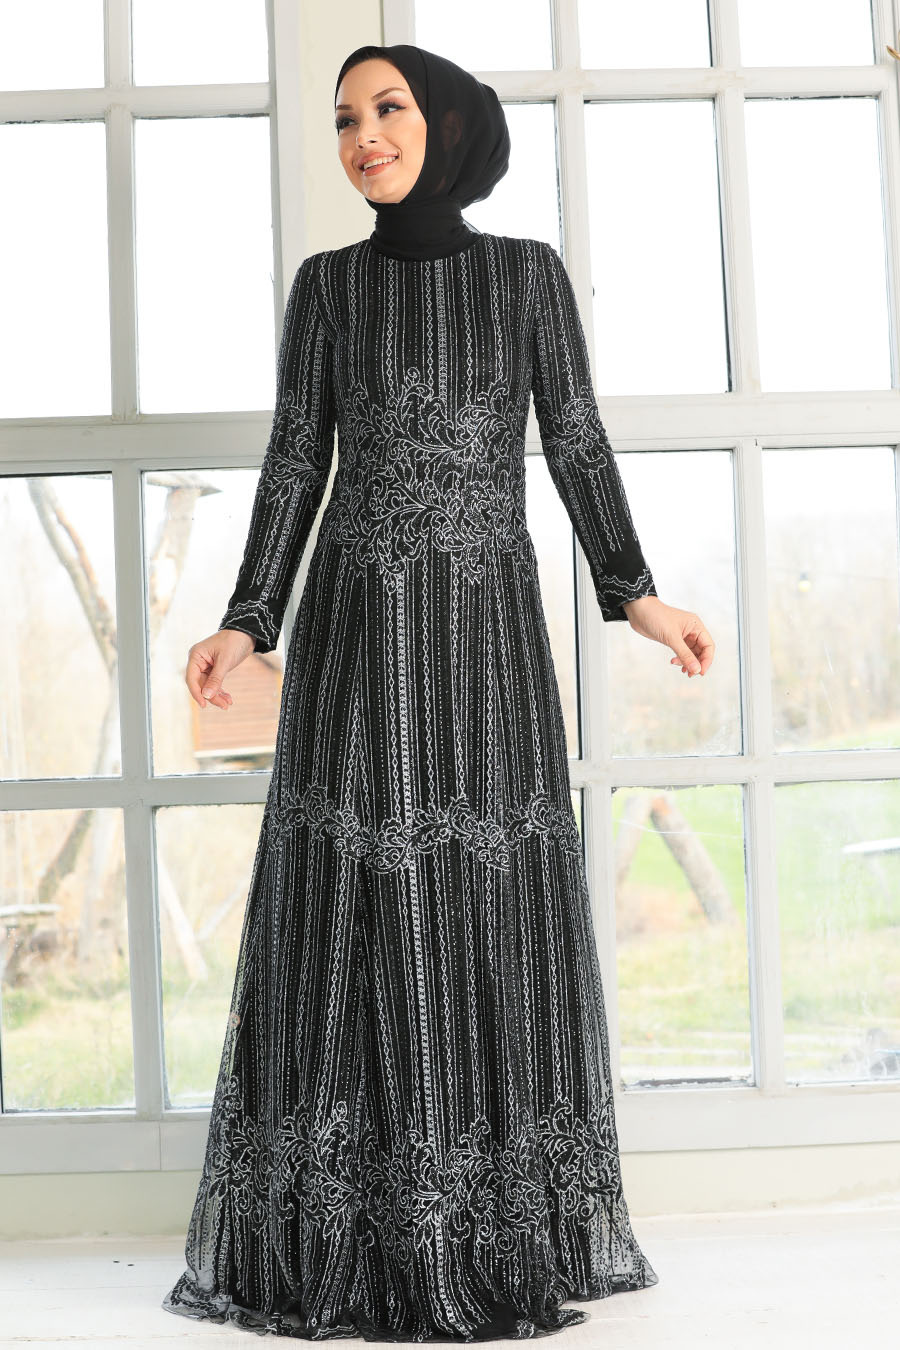 Tesettürlü Abiye Elbise - Simli Pırıltılı Siyah Tesettür Abiye Elbise 20841S